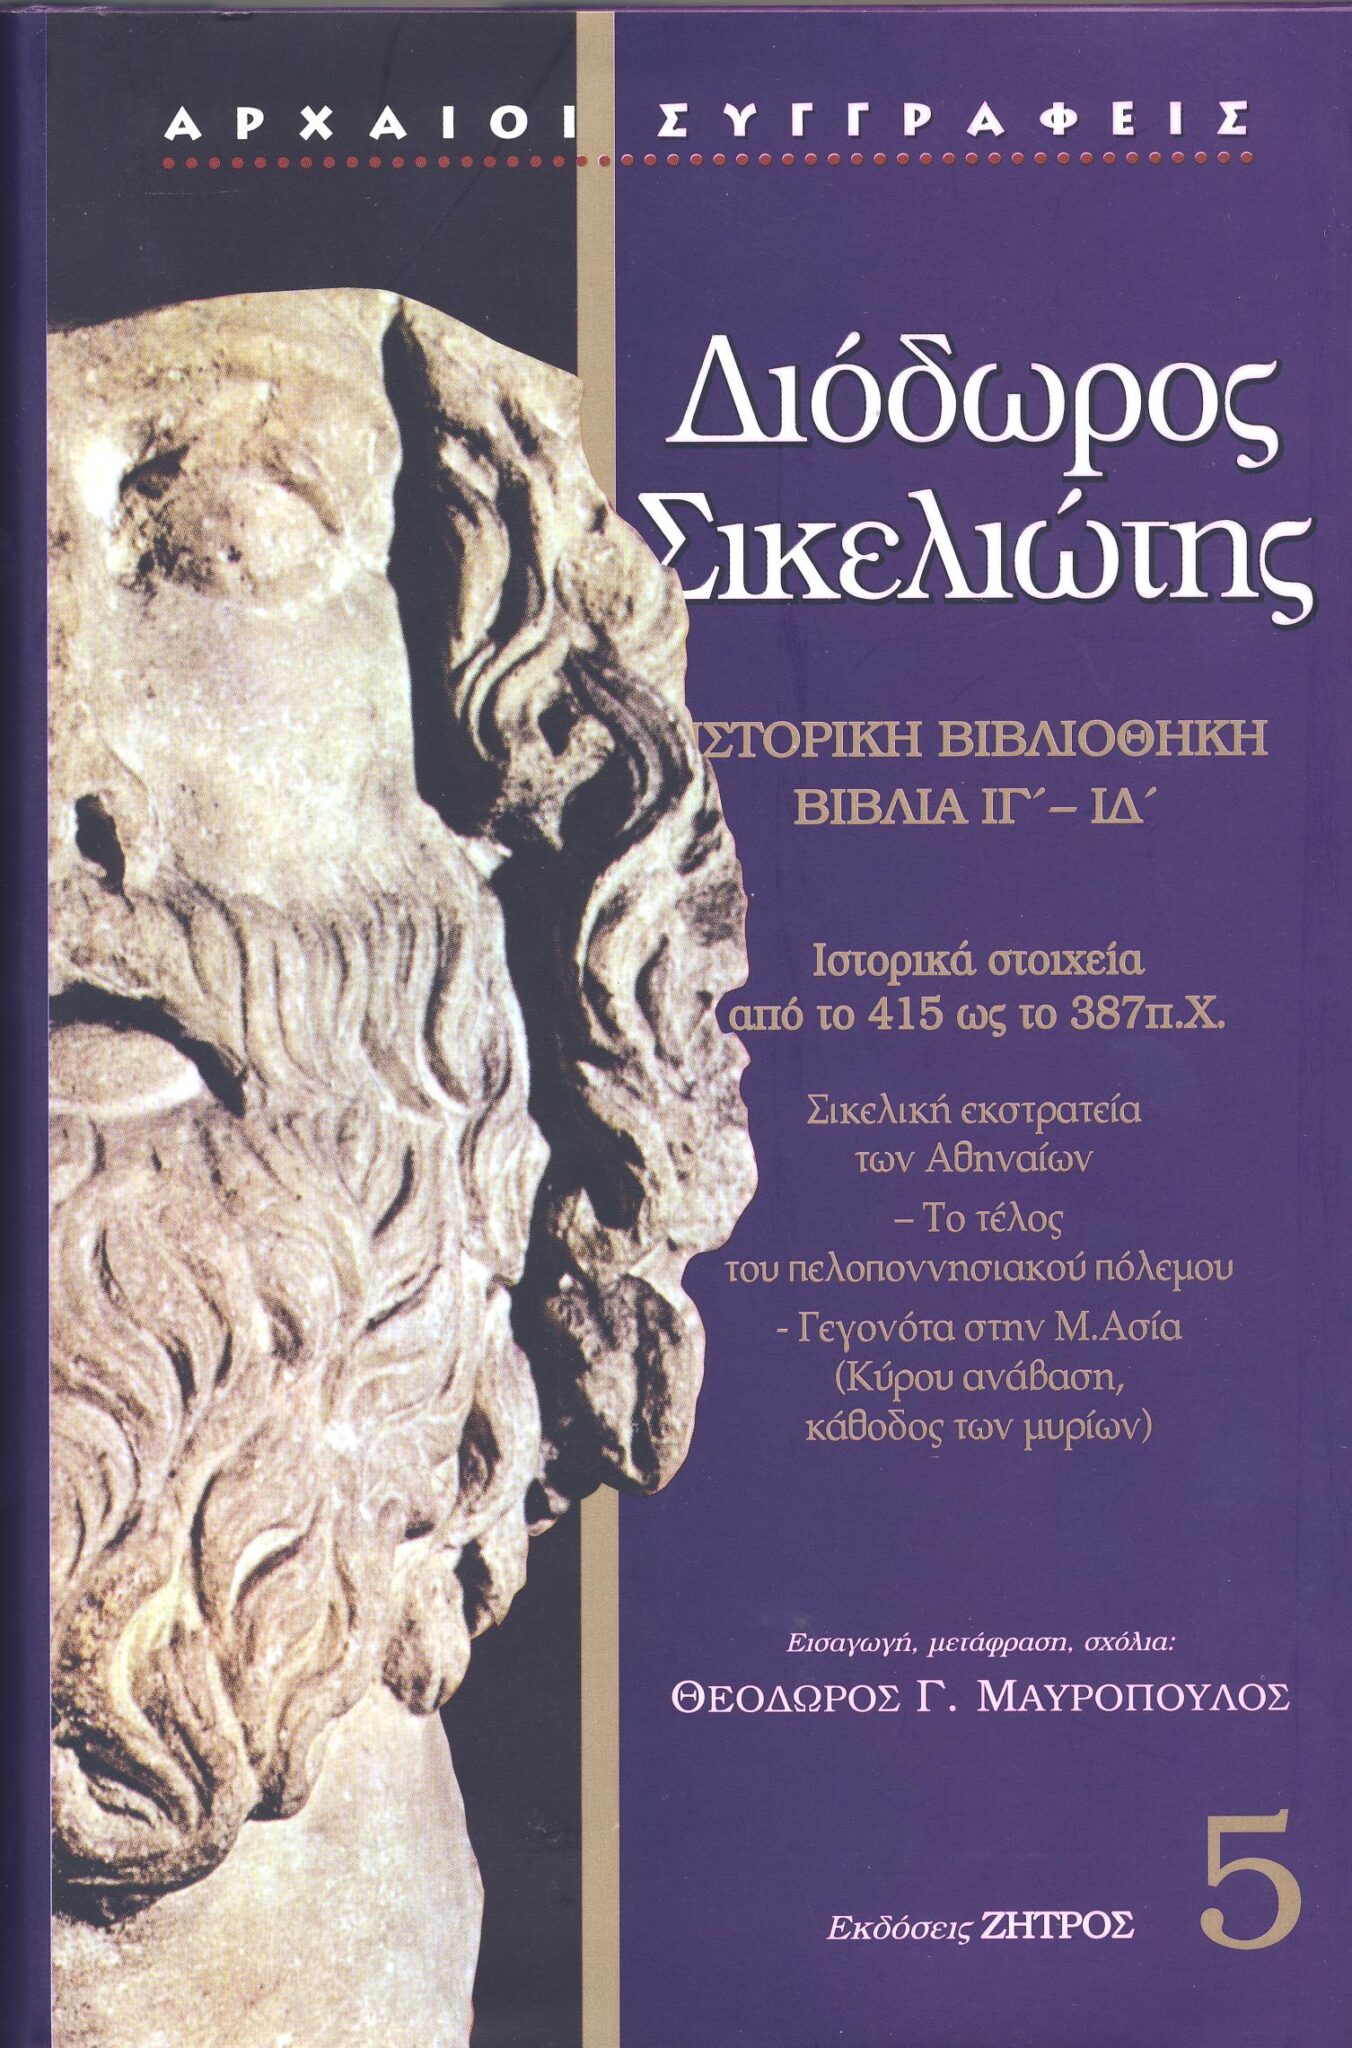 τα καλυτερα ελληνικα ιστορικα μυθιστορηματα